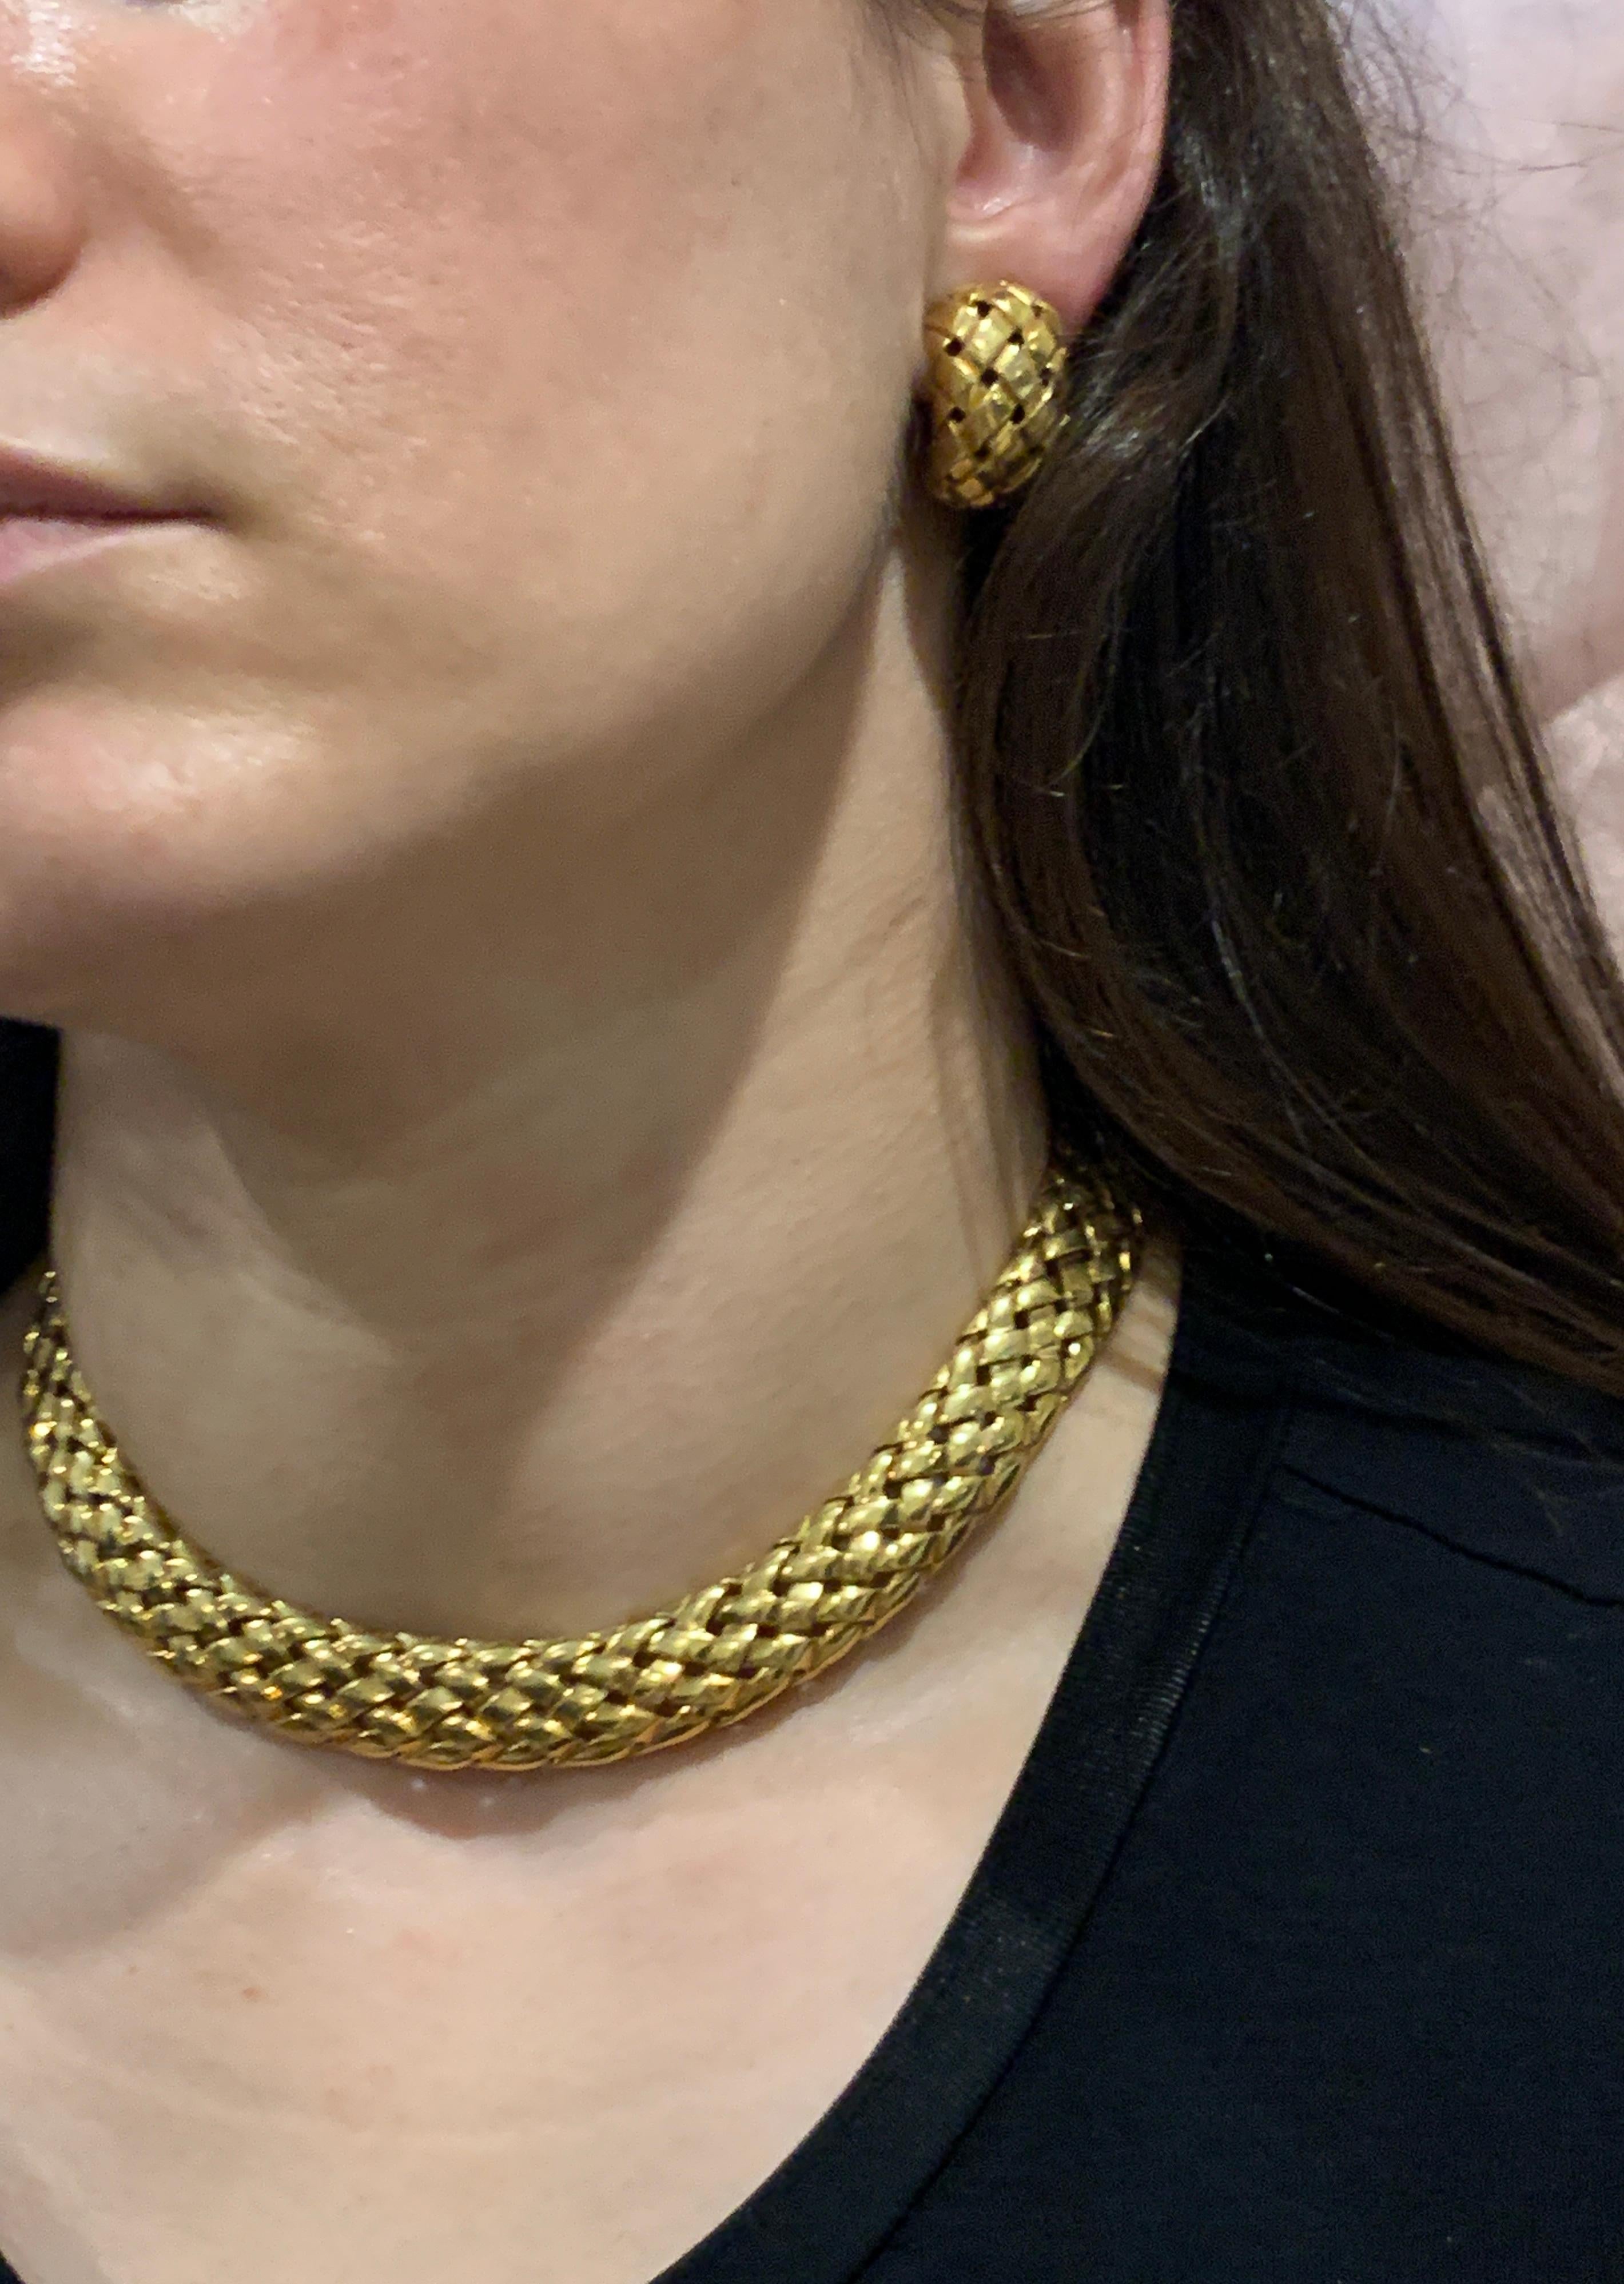 Van Cleef & Arpels Necklace and Earrings Bridal Suite 128 Grams 18k Gold, Estate 11